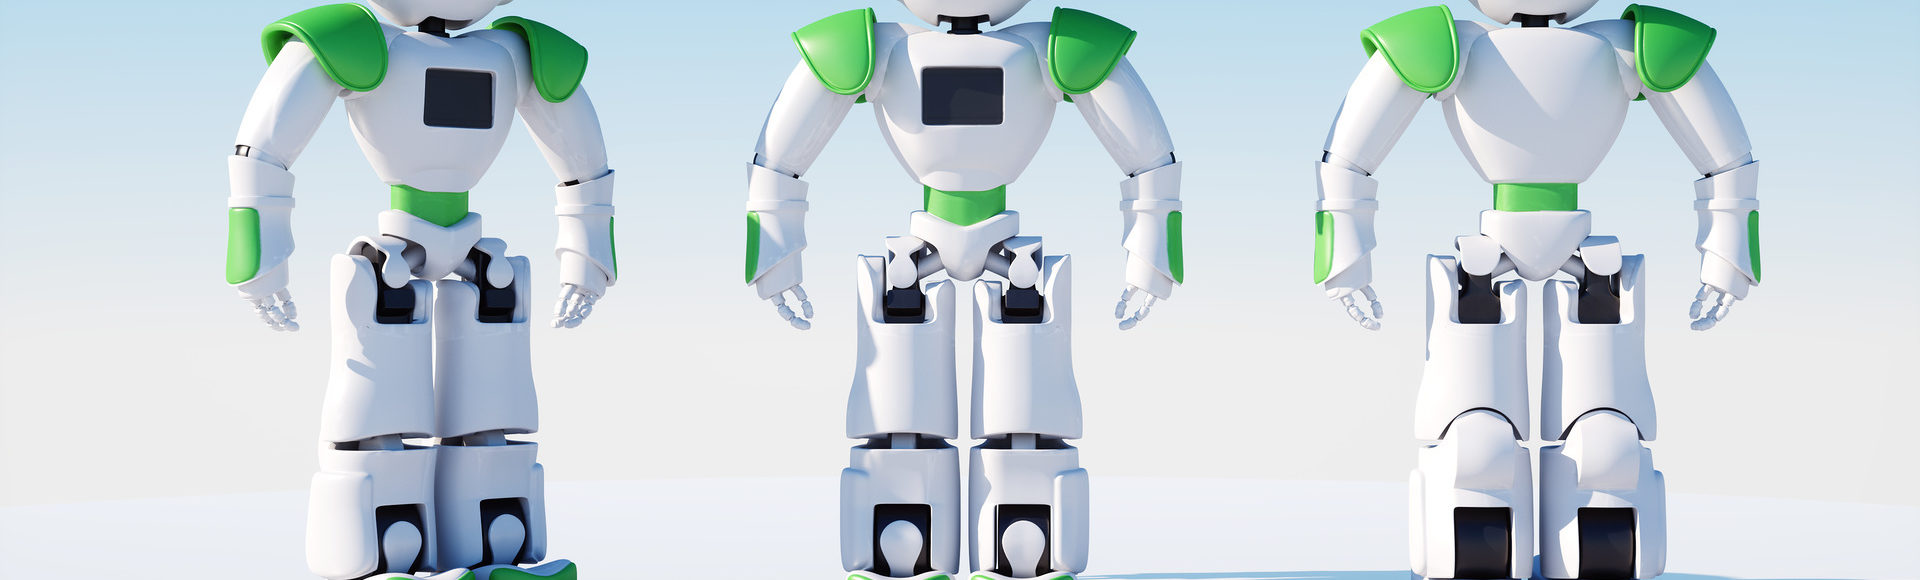 Mascotte Robot